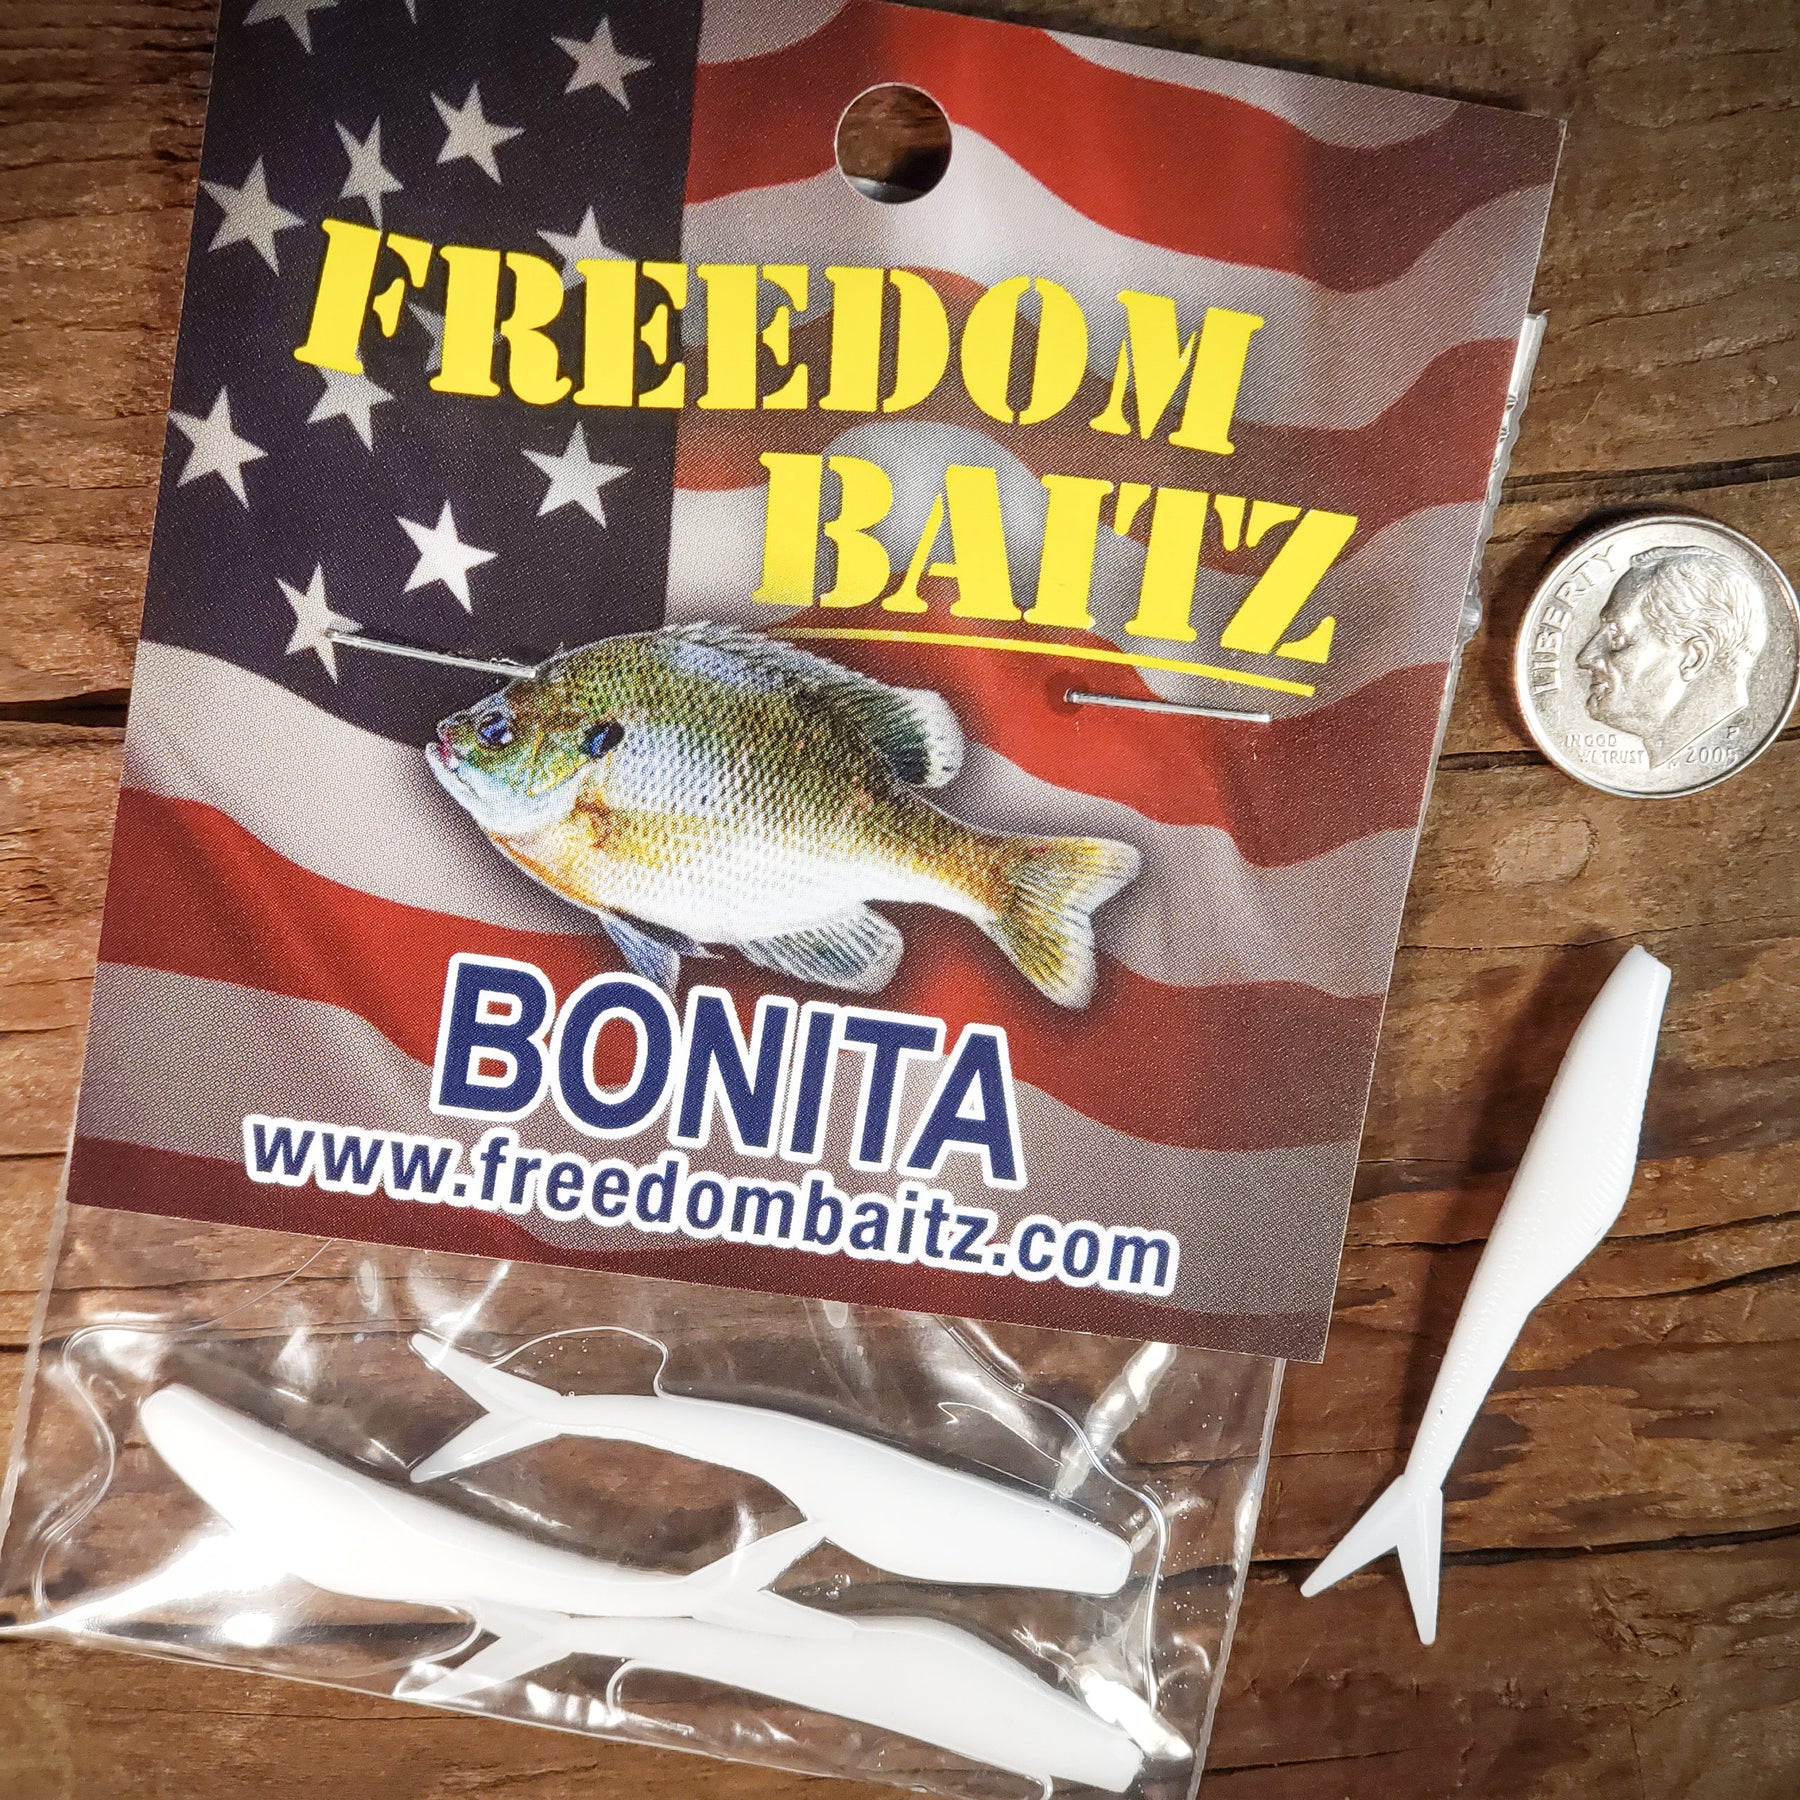 Freedom Baitz Bonita  Karl's Bait & Tackle